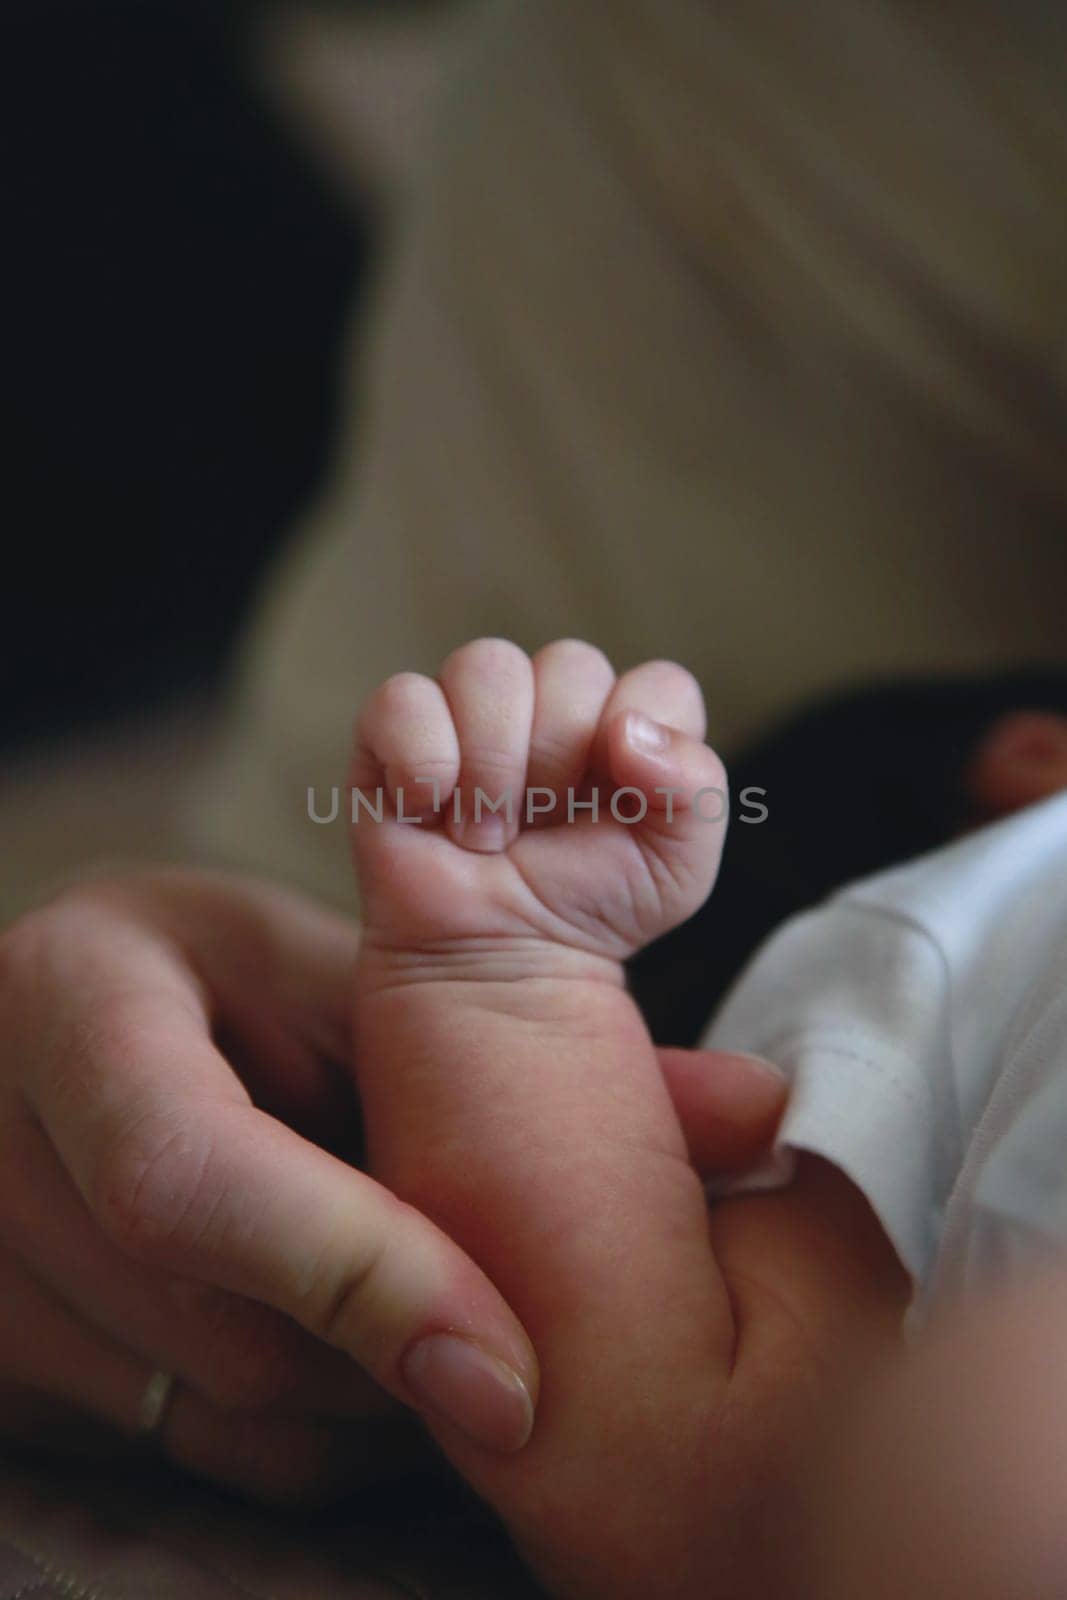 Baby hand. Sleeping baby's hand by Mastak80